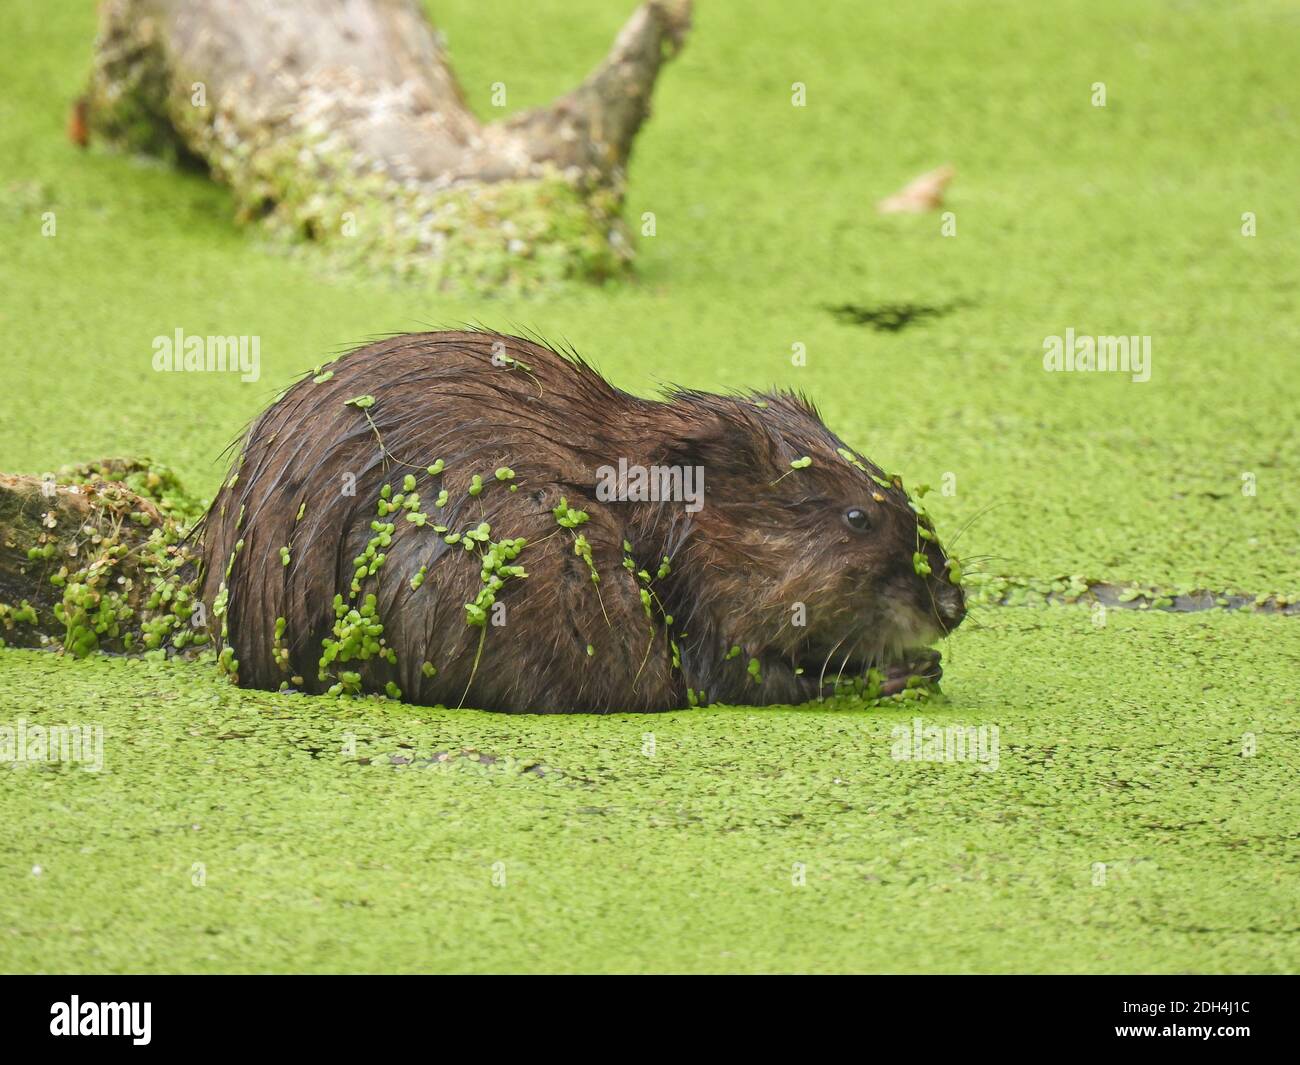 Muskrat en un estanque: Un muskrat se sienta en un estanque que está cubierto de la flor de la maleza del duckweed que es verde brillante y cubre la superficie entera del agua y pegado a. Foto de stock